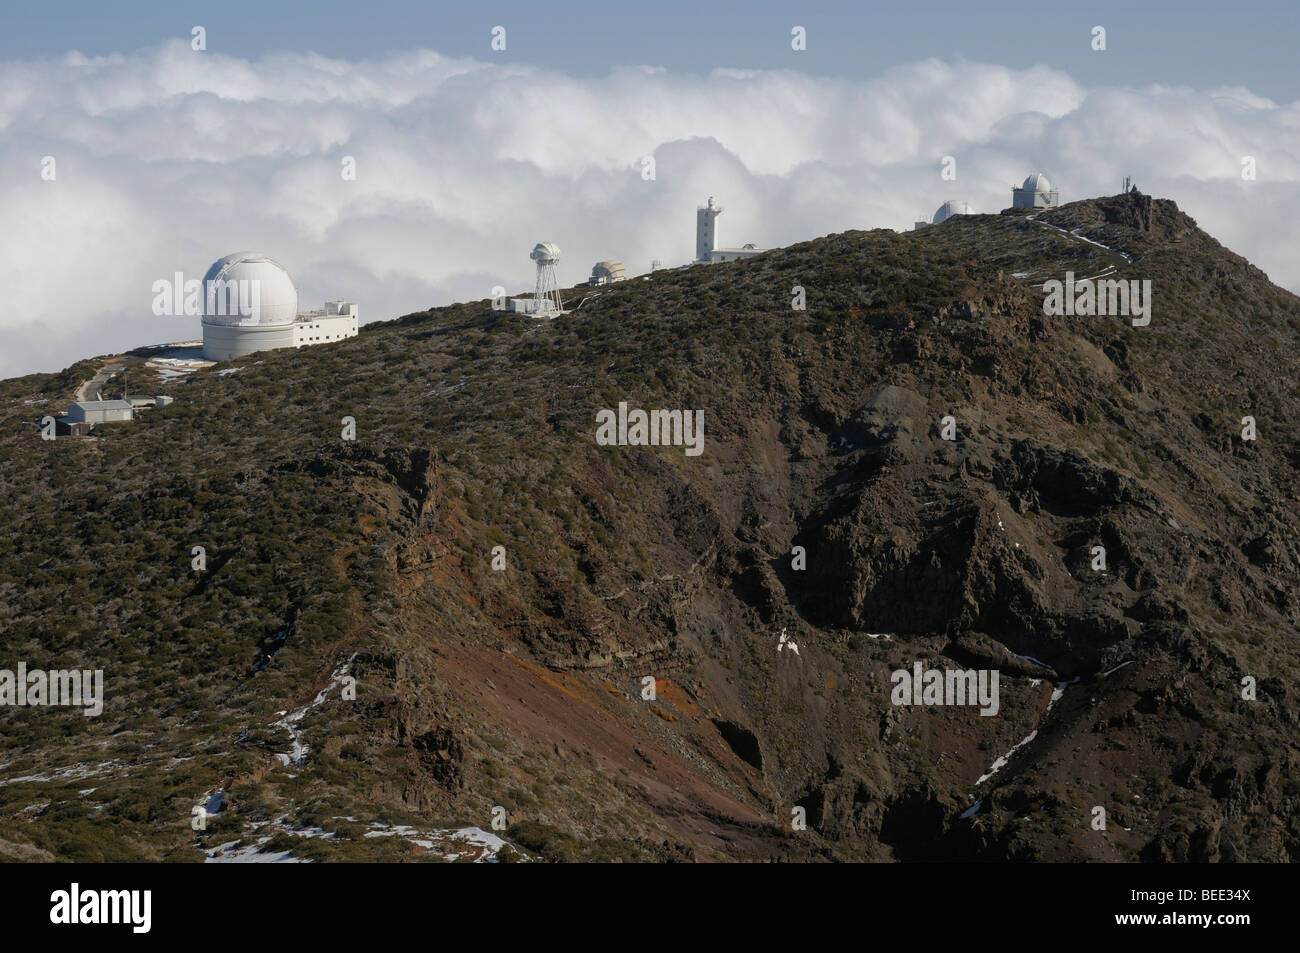 Observatory, Roque de los Muchachos, Caldera de Taburiente National Park, La Palma, Canary Islands, Spain Stock Photo